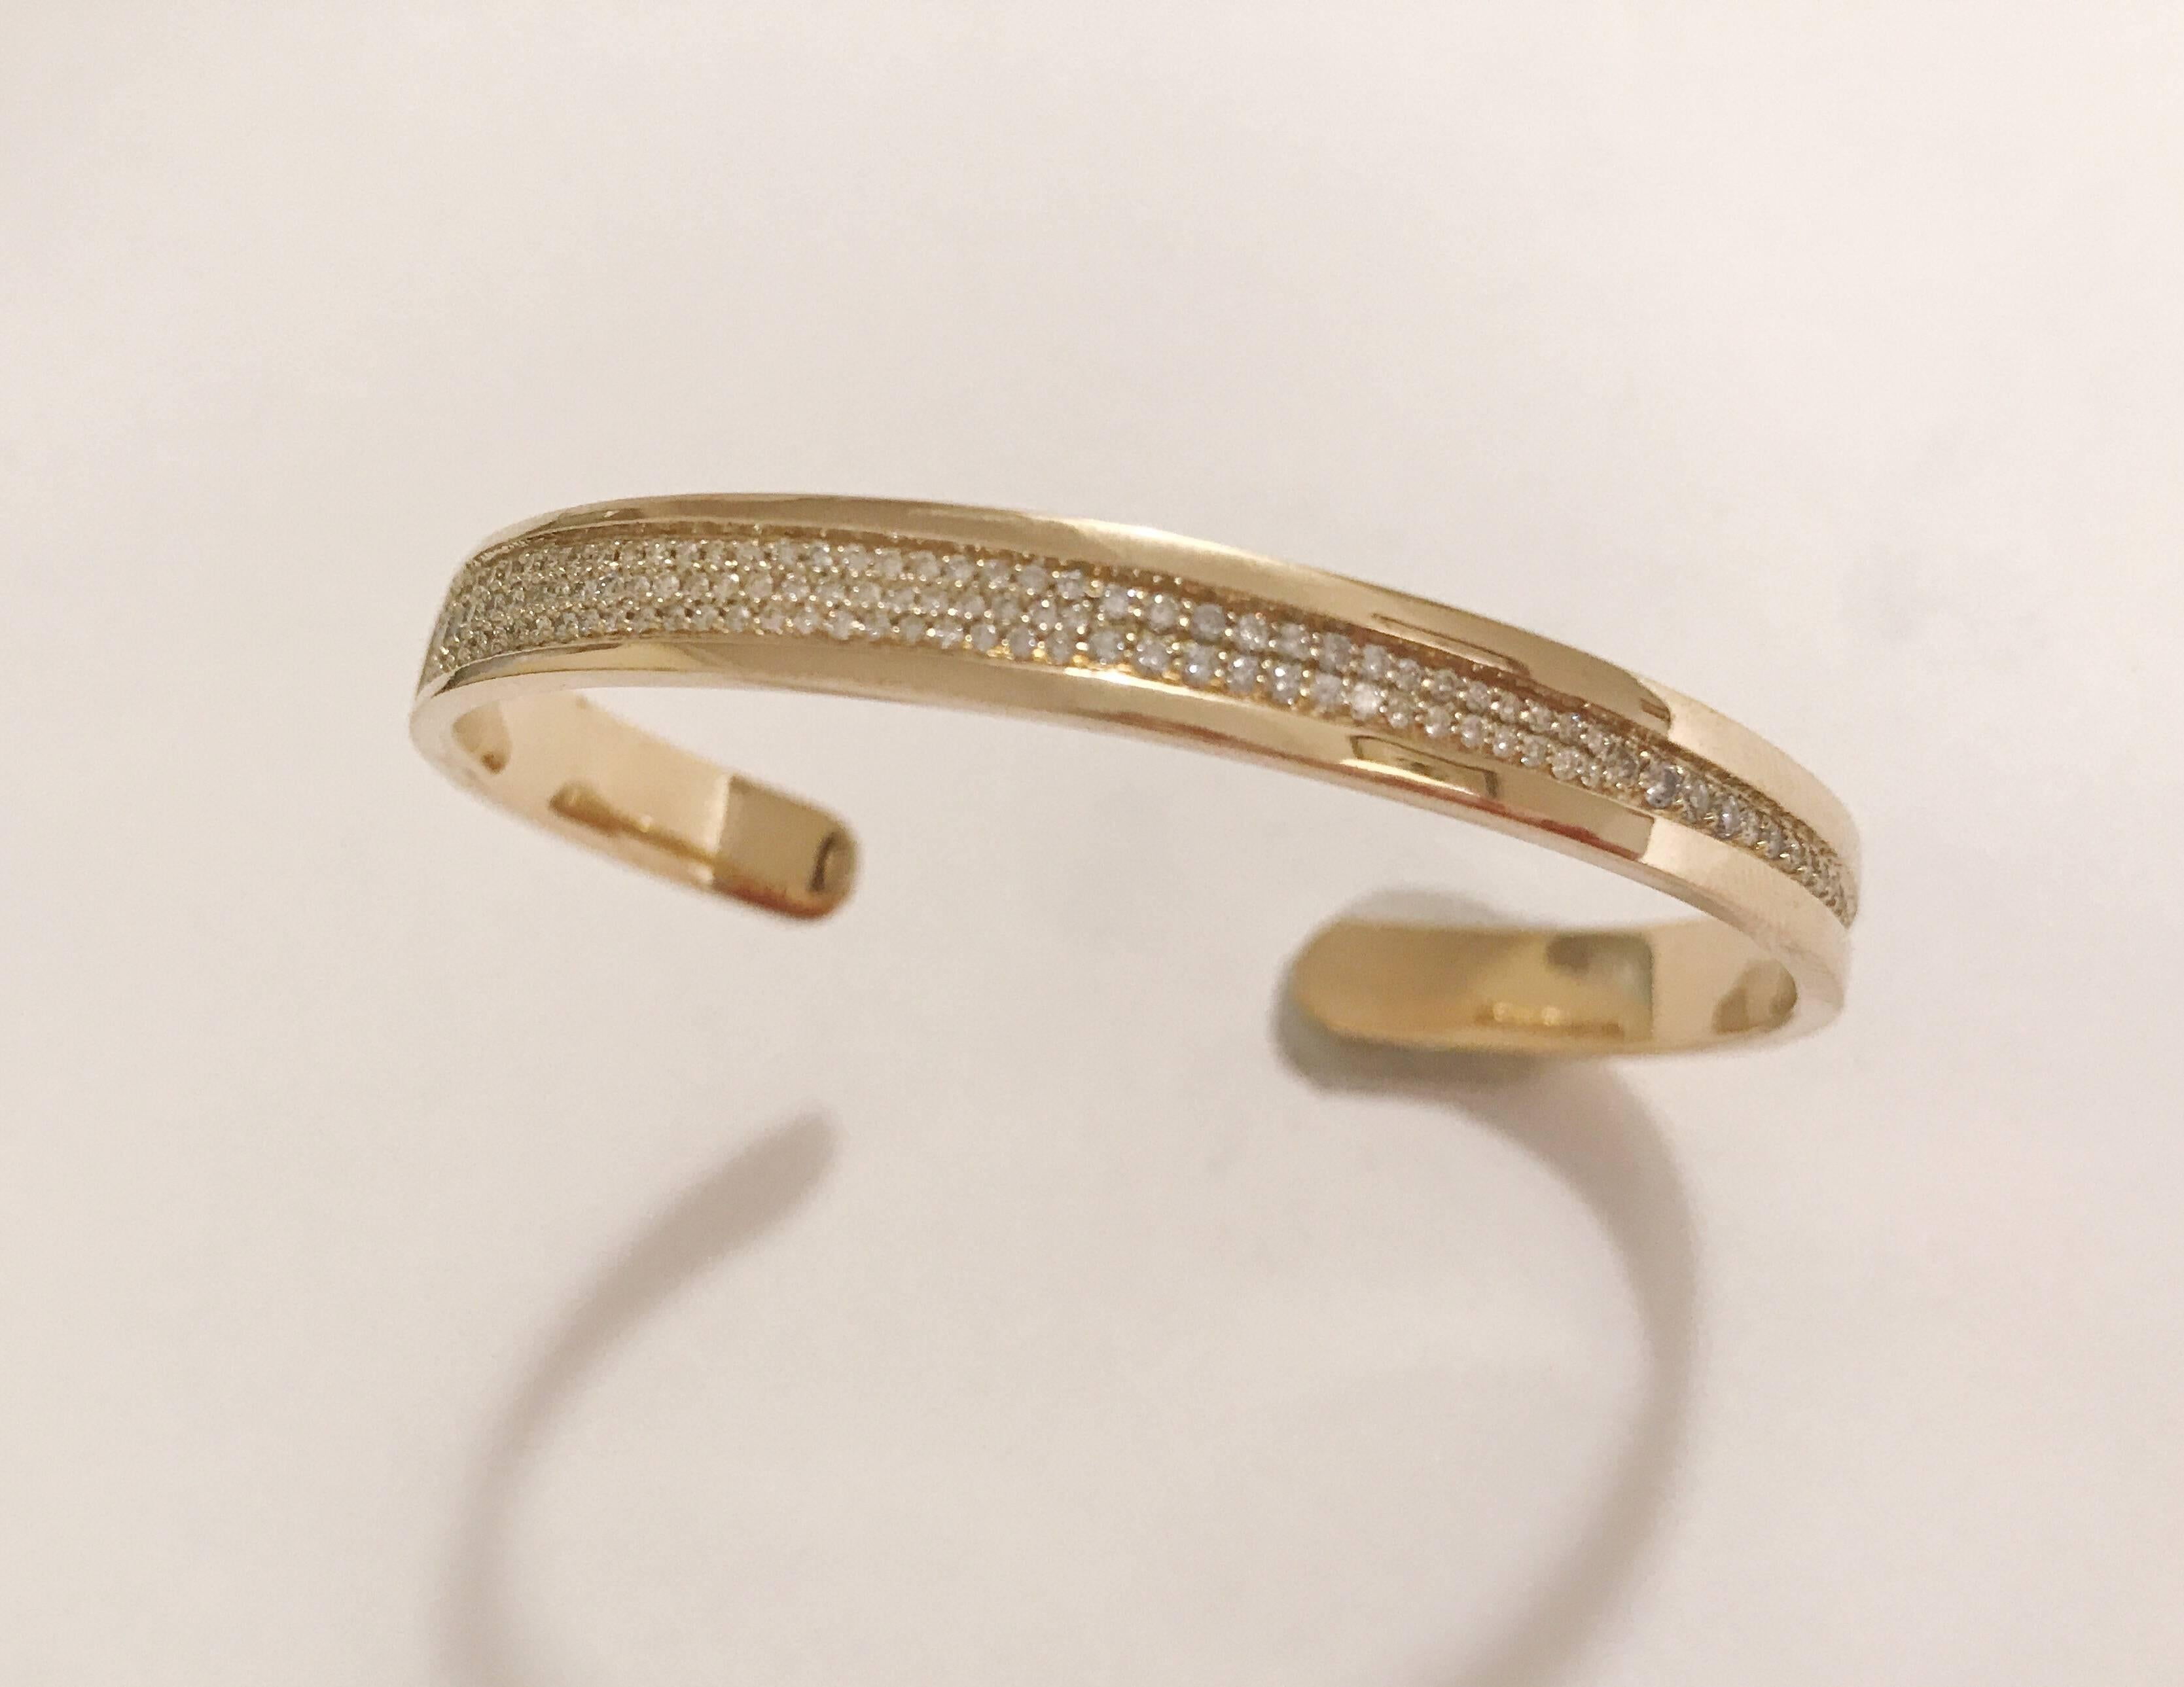 18kt Gelbgold Granulated Diamond Cuff Bracelet ist ~ ca. 1,00 cts. 

Dieses Manschettenarmband kann in jeder Goldfarbe hergestellt werden und passt zu allen Handgelenksgrößen. 

Bitte nehmen Sie mit uns Kontakt auf, wenn Sie Fragen haben. 

Das